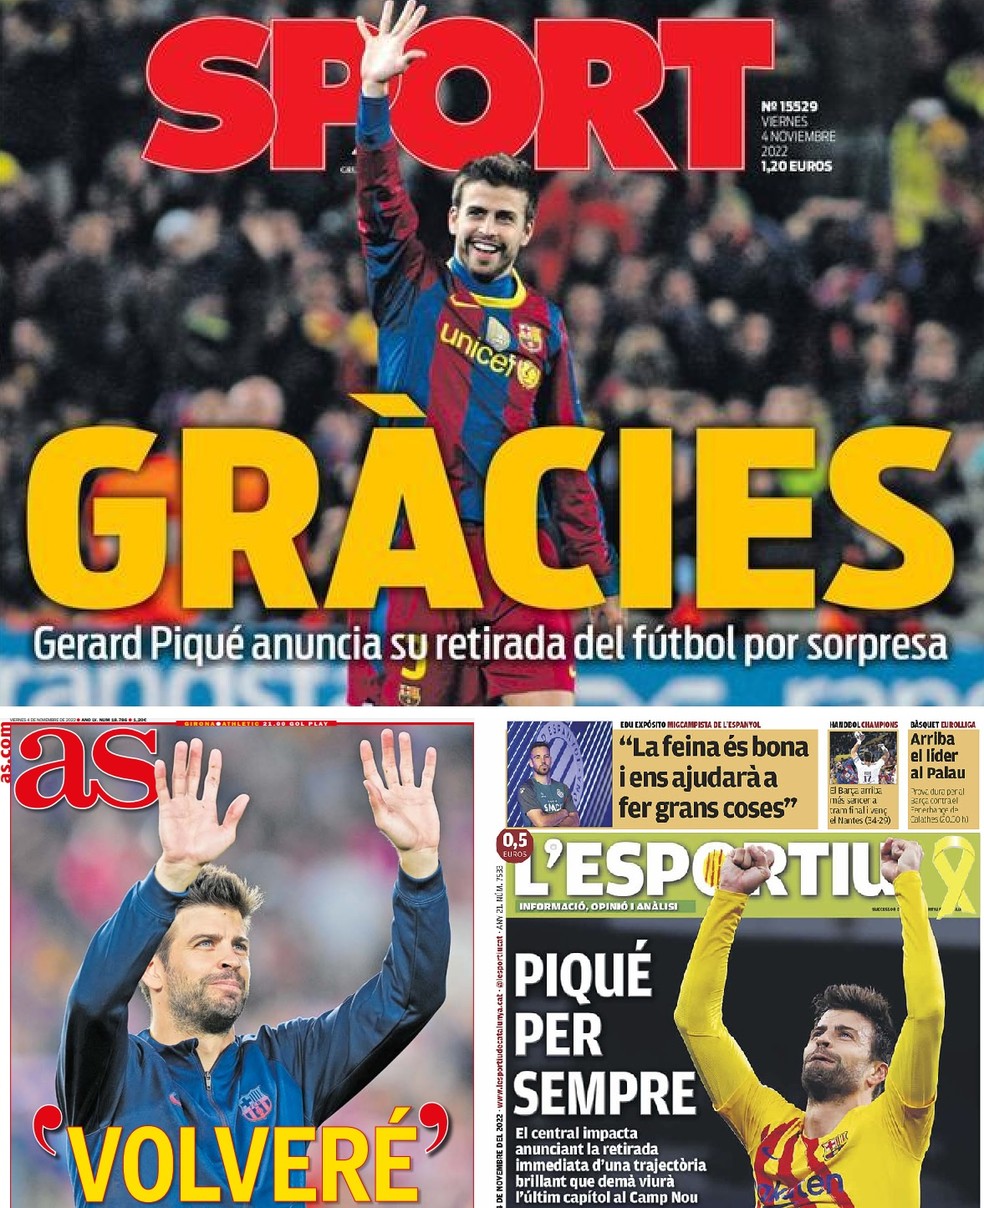 Capas de jornais espanhóis sobre a despedida de Gerard Piqué — Foto: Reprodução